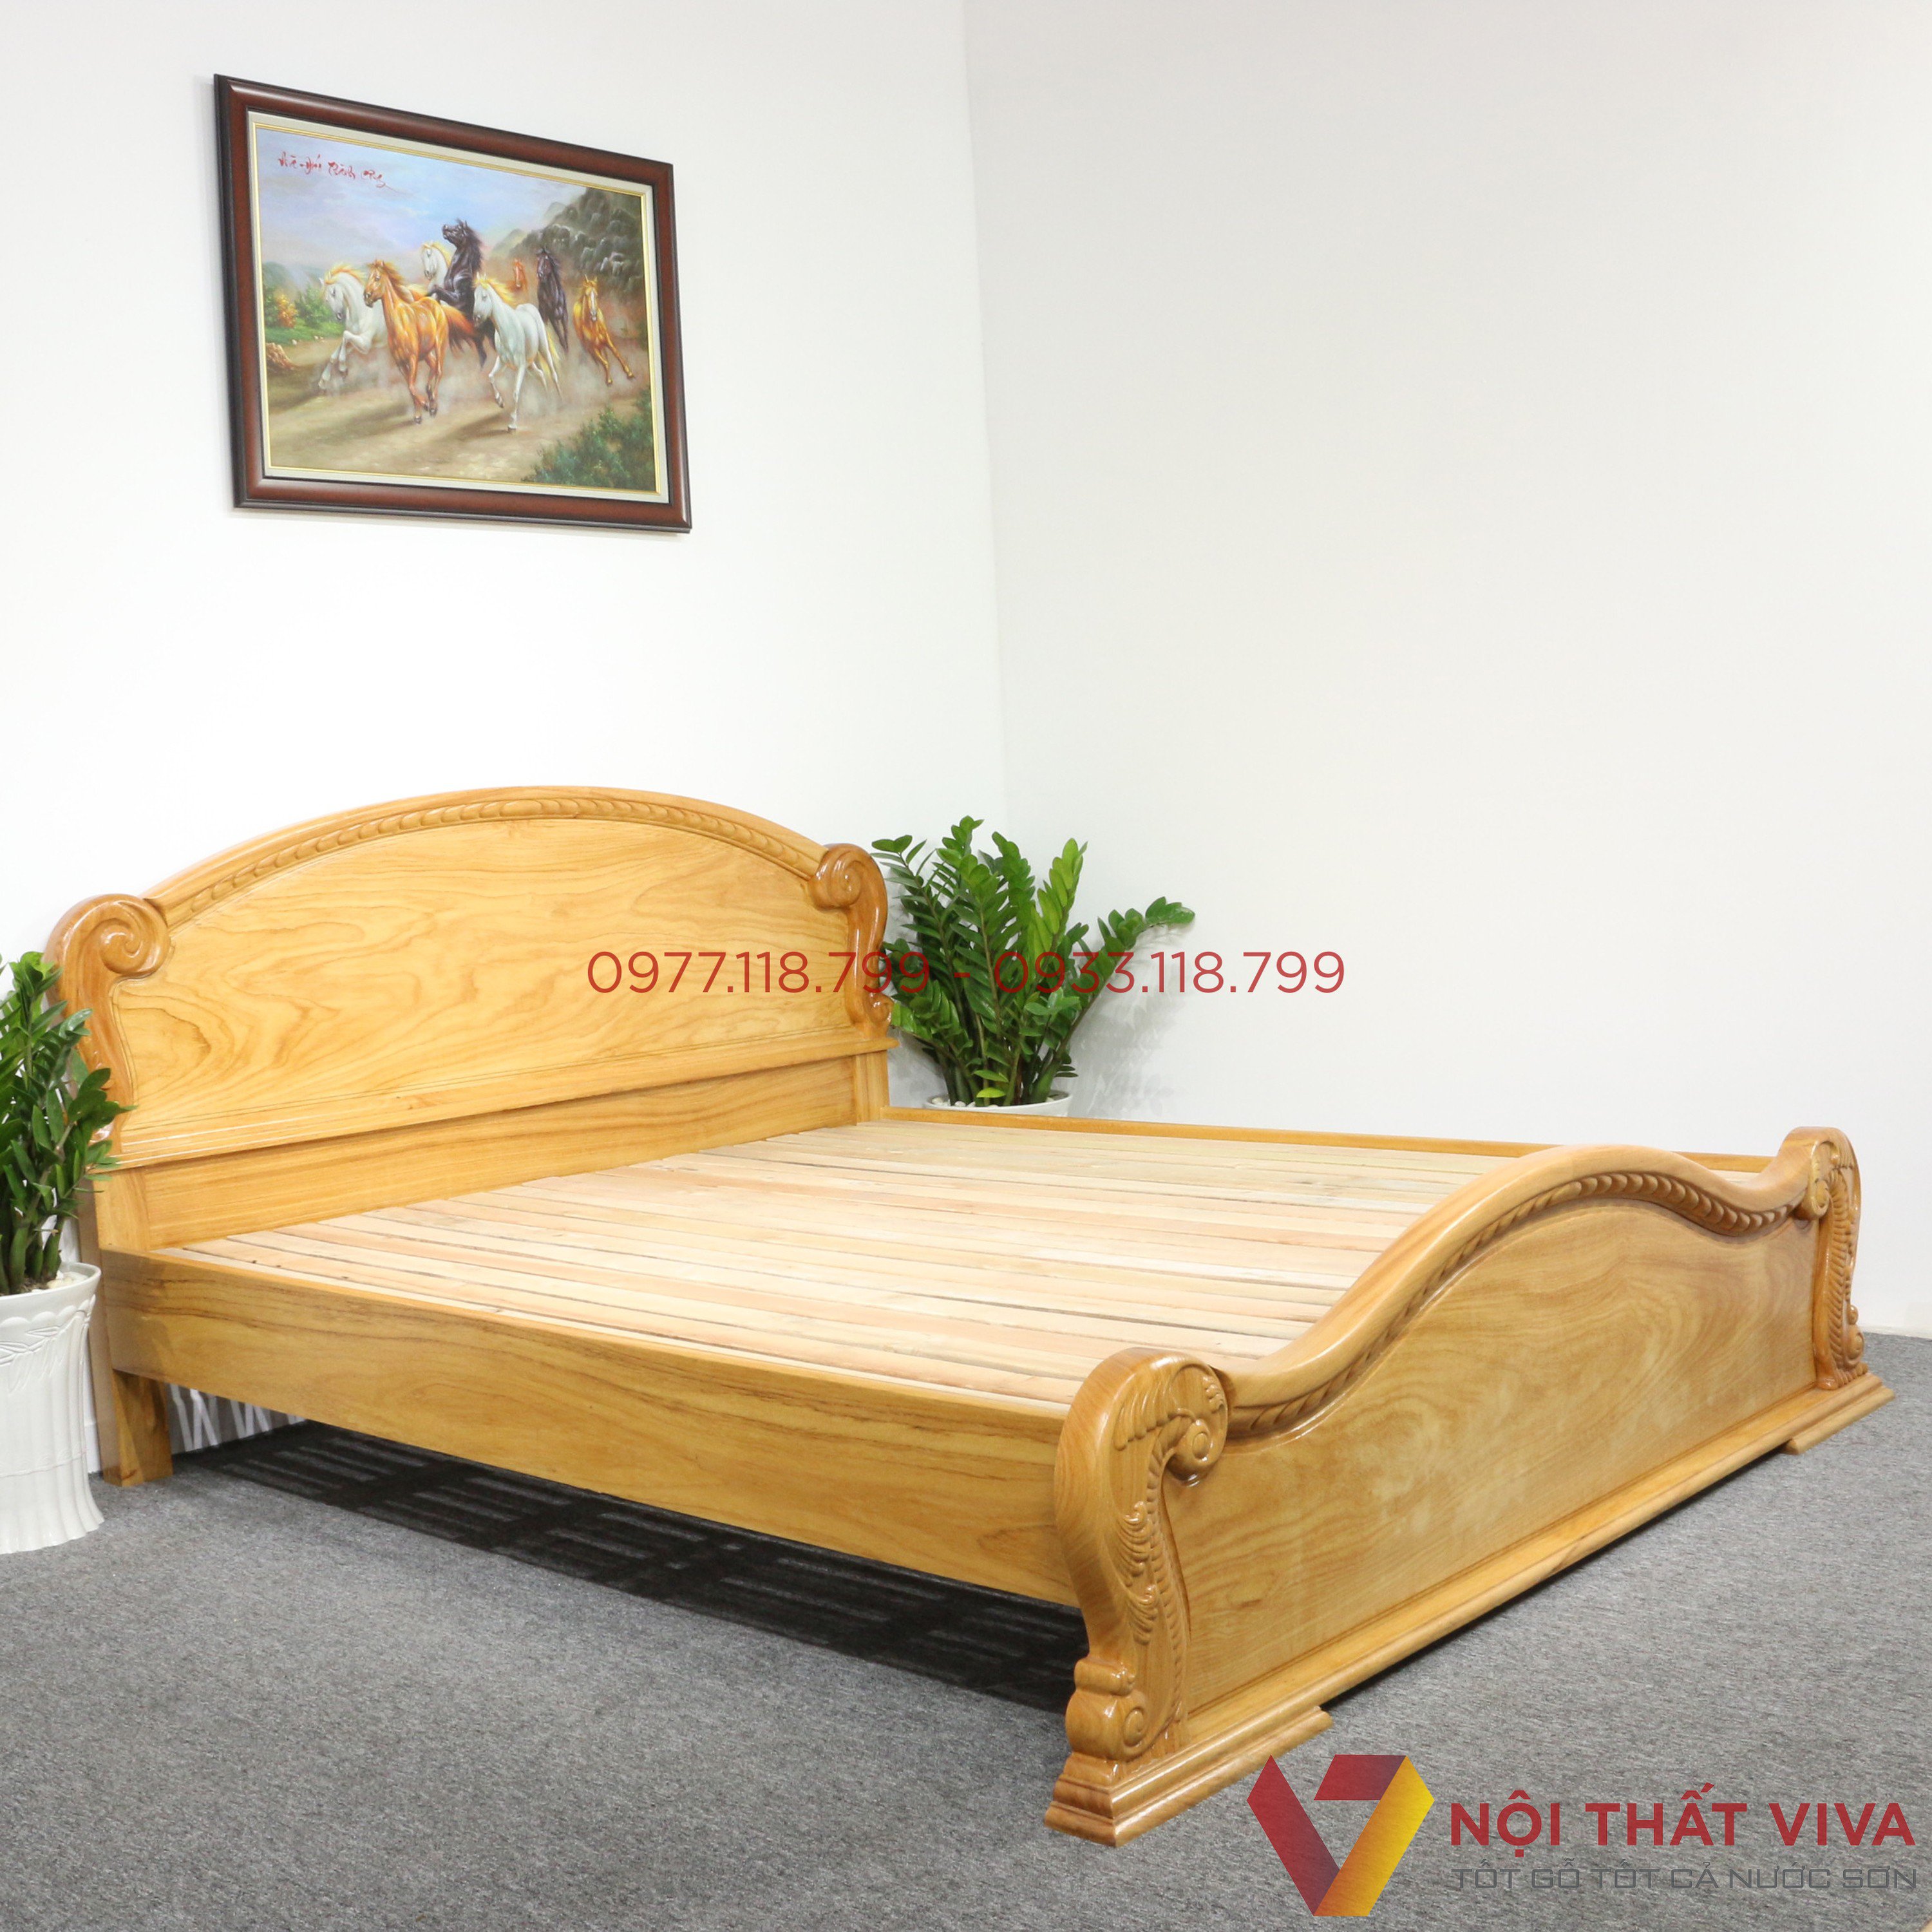 Top những mẫu giường ngủ tân cổ điển gỗ tự nhiên đang được bán chạy